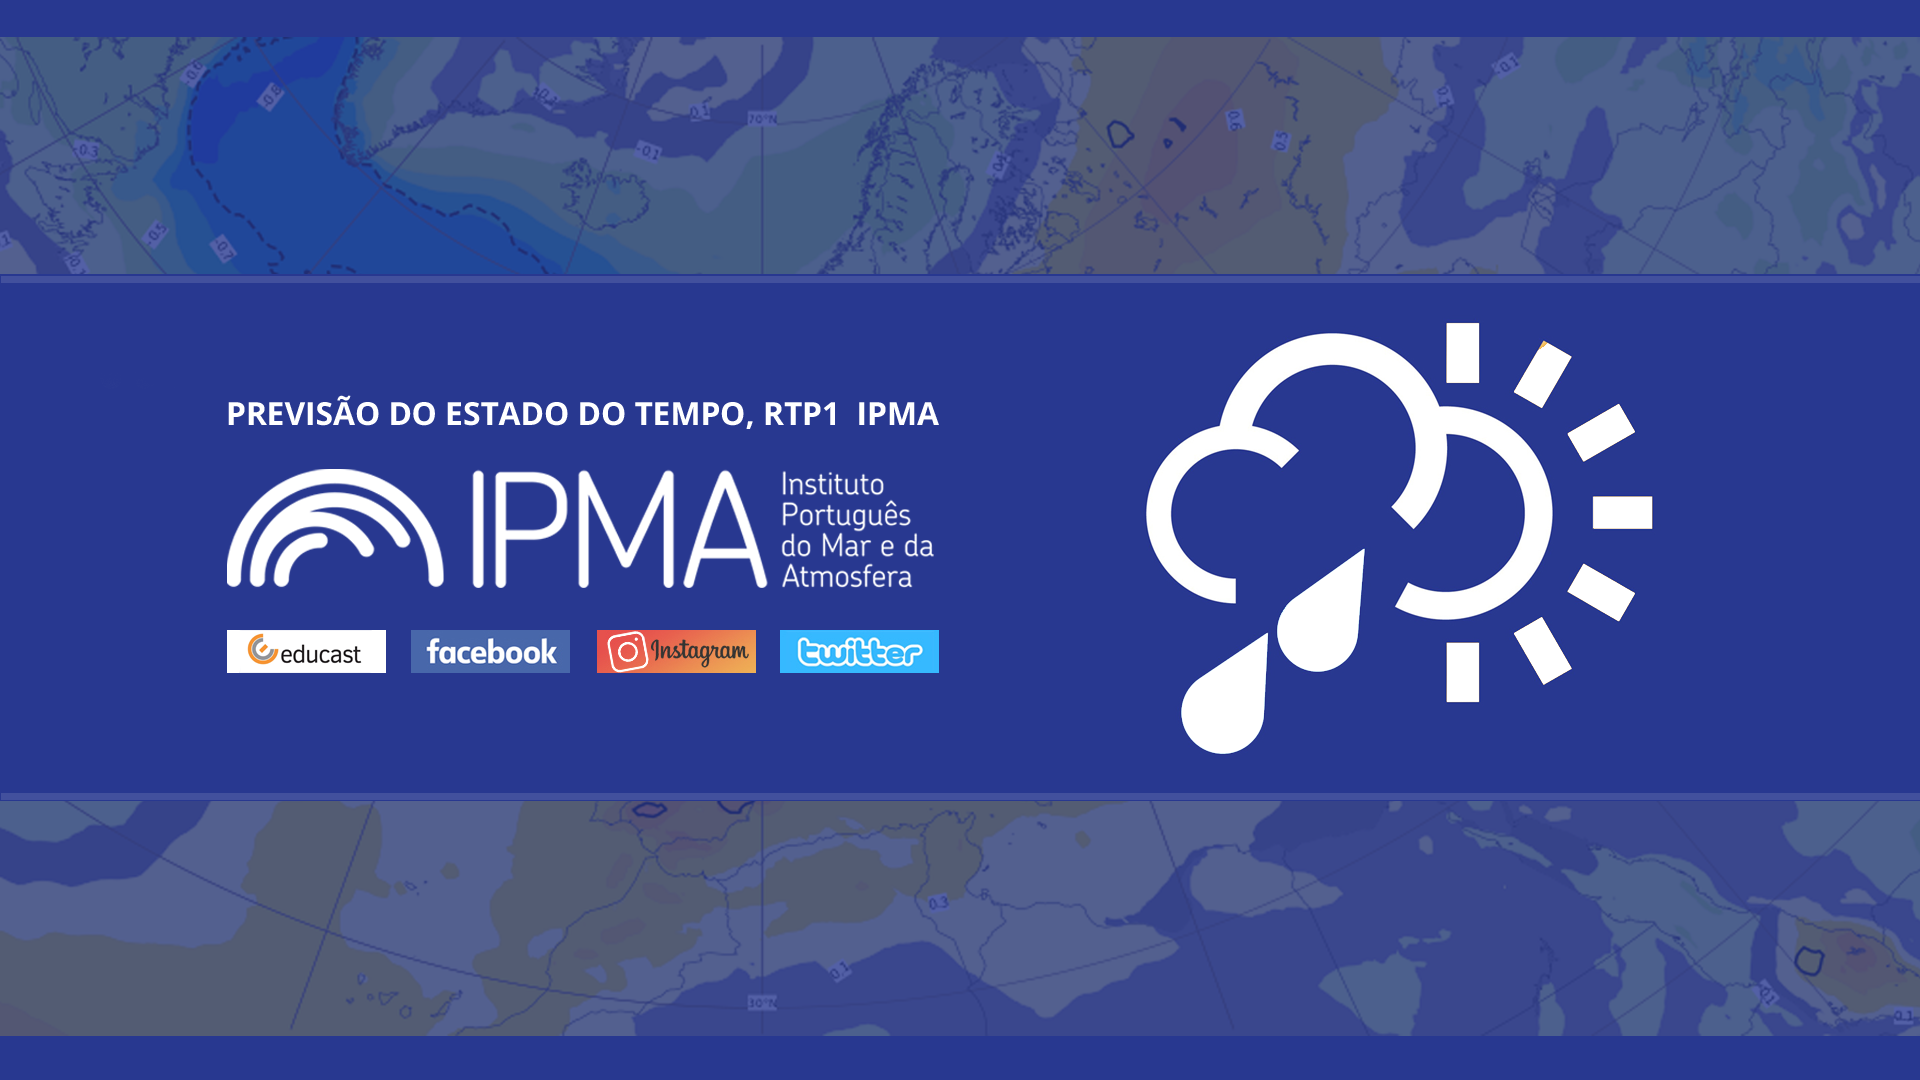  Previsão do estado do tempo, RTP1, 16-02-2022, IPMA.